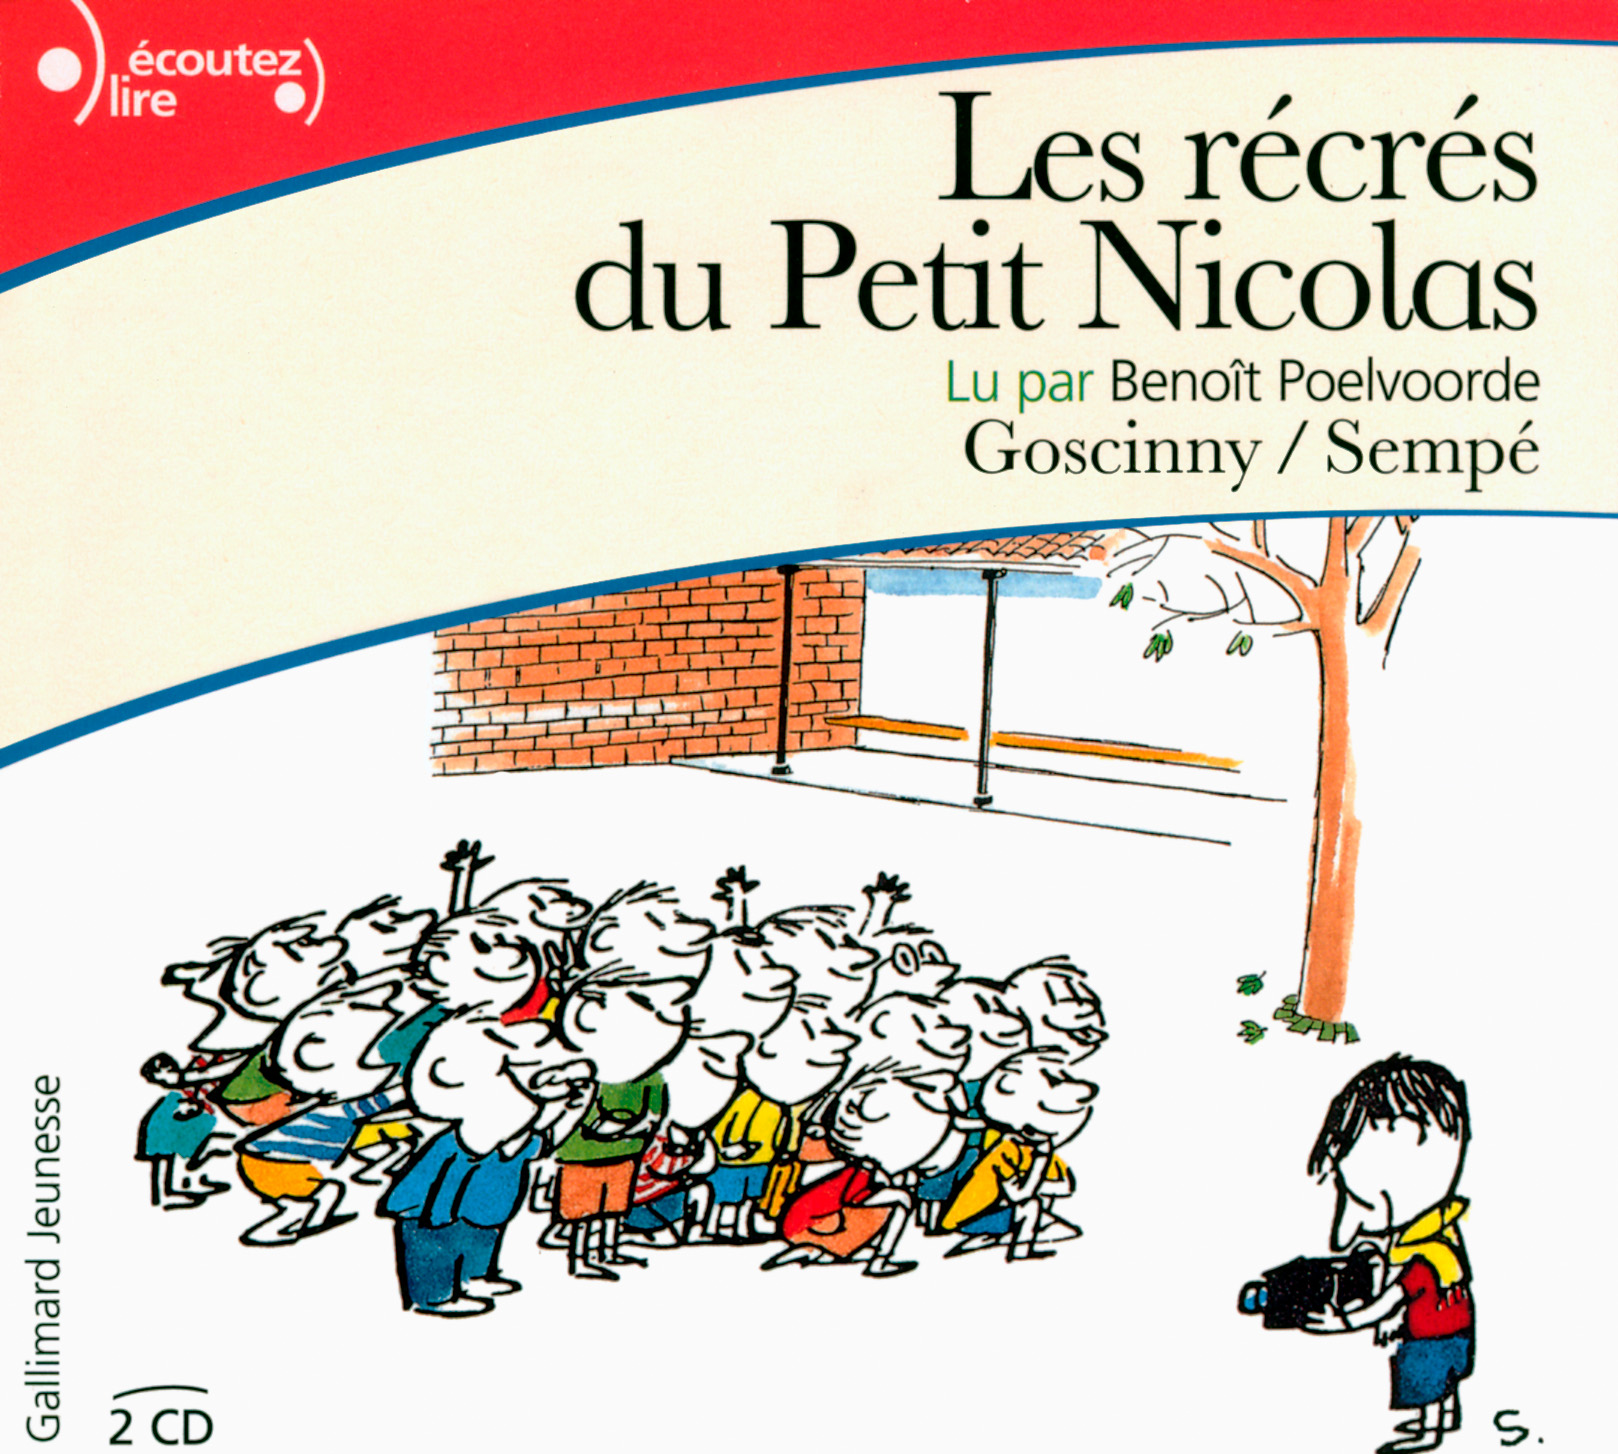 Les récrés du Petit Nicolas / Goscinny et Sempé